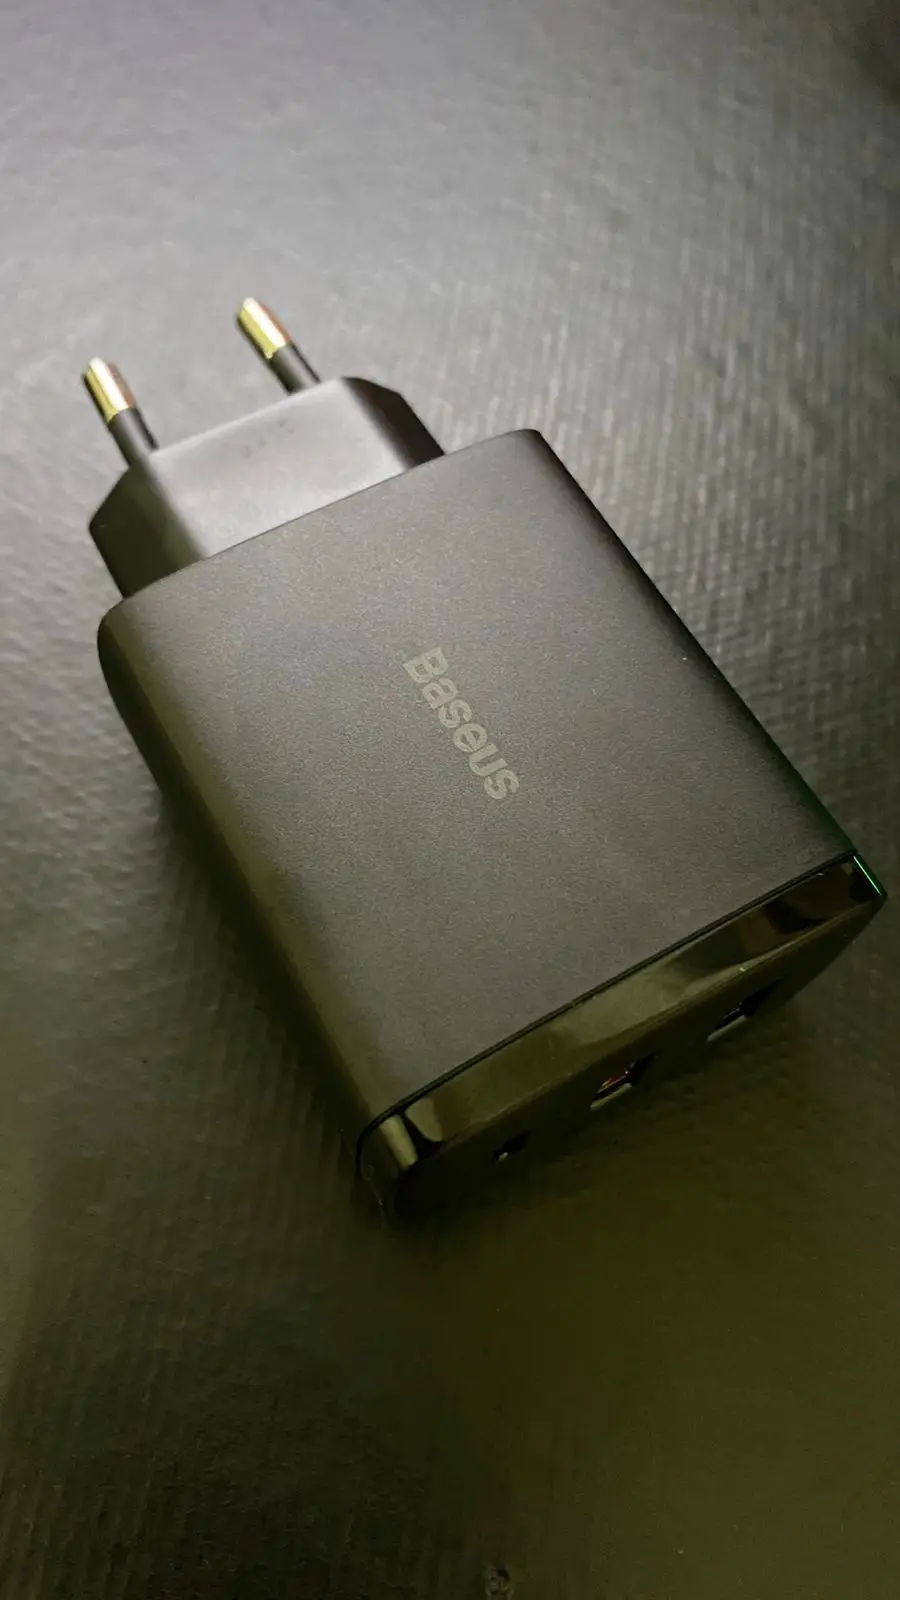 Carregador Baseus 30w USB Tipo C photo review